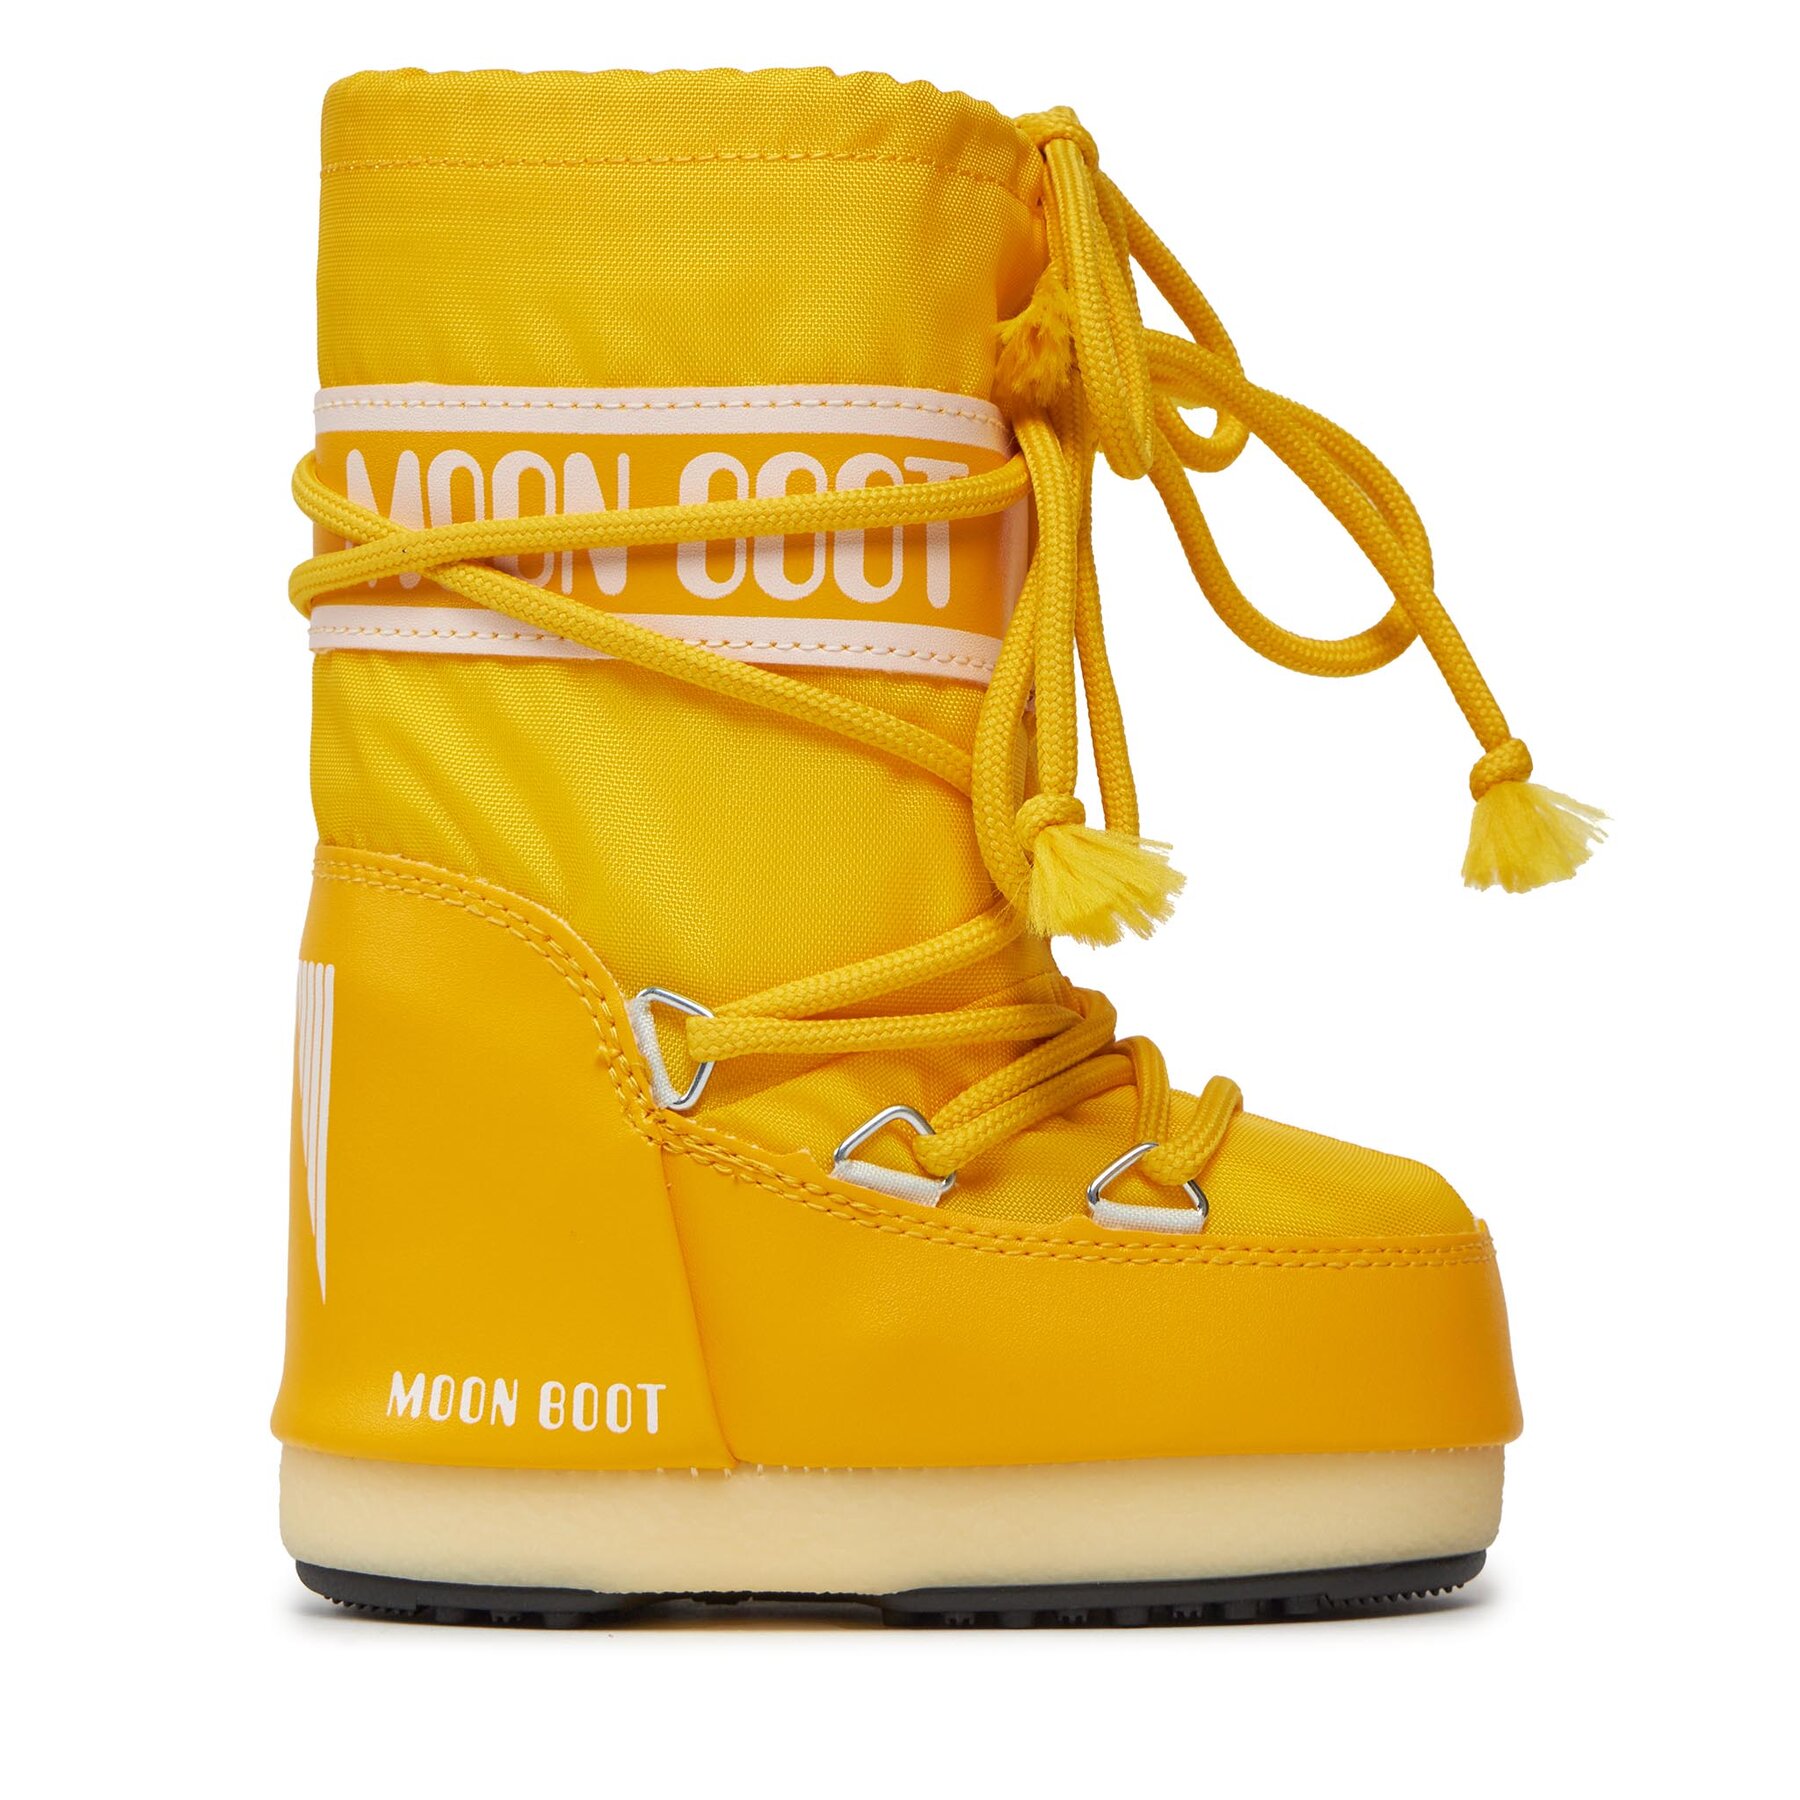 Comprar en oferta Moon Boot Nylon yellow